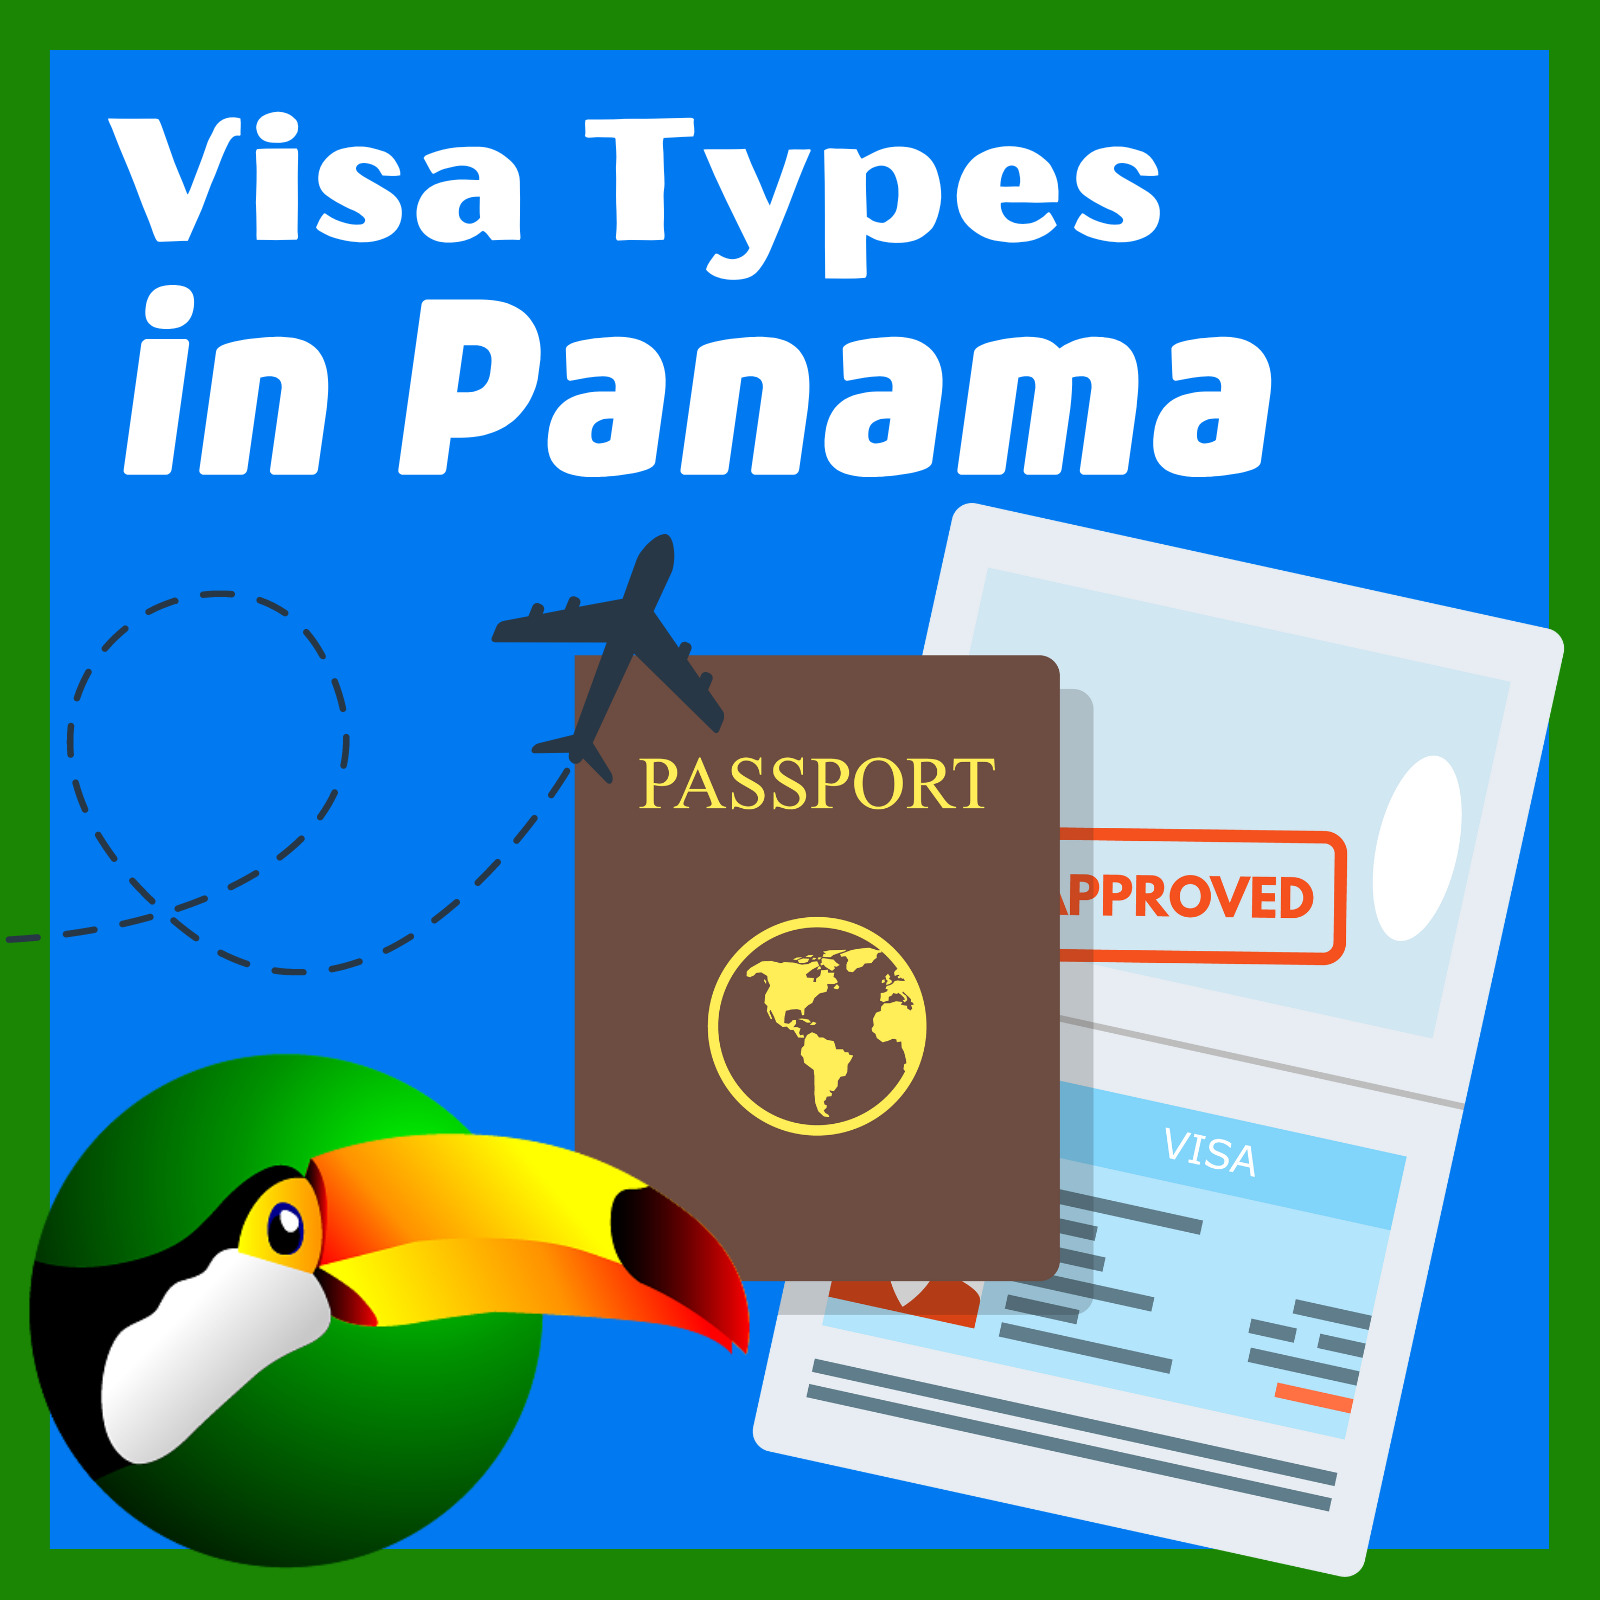 Visa Types in Panama